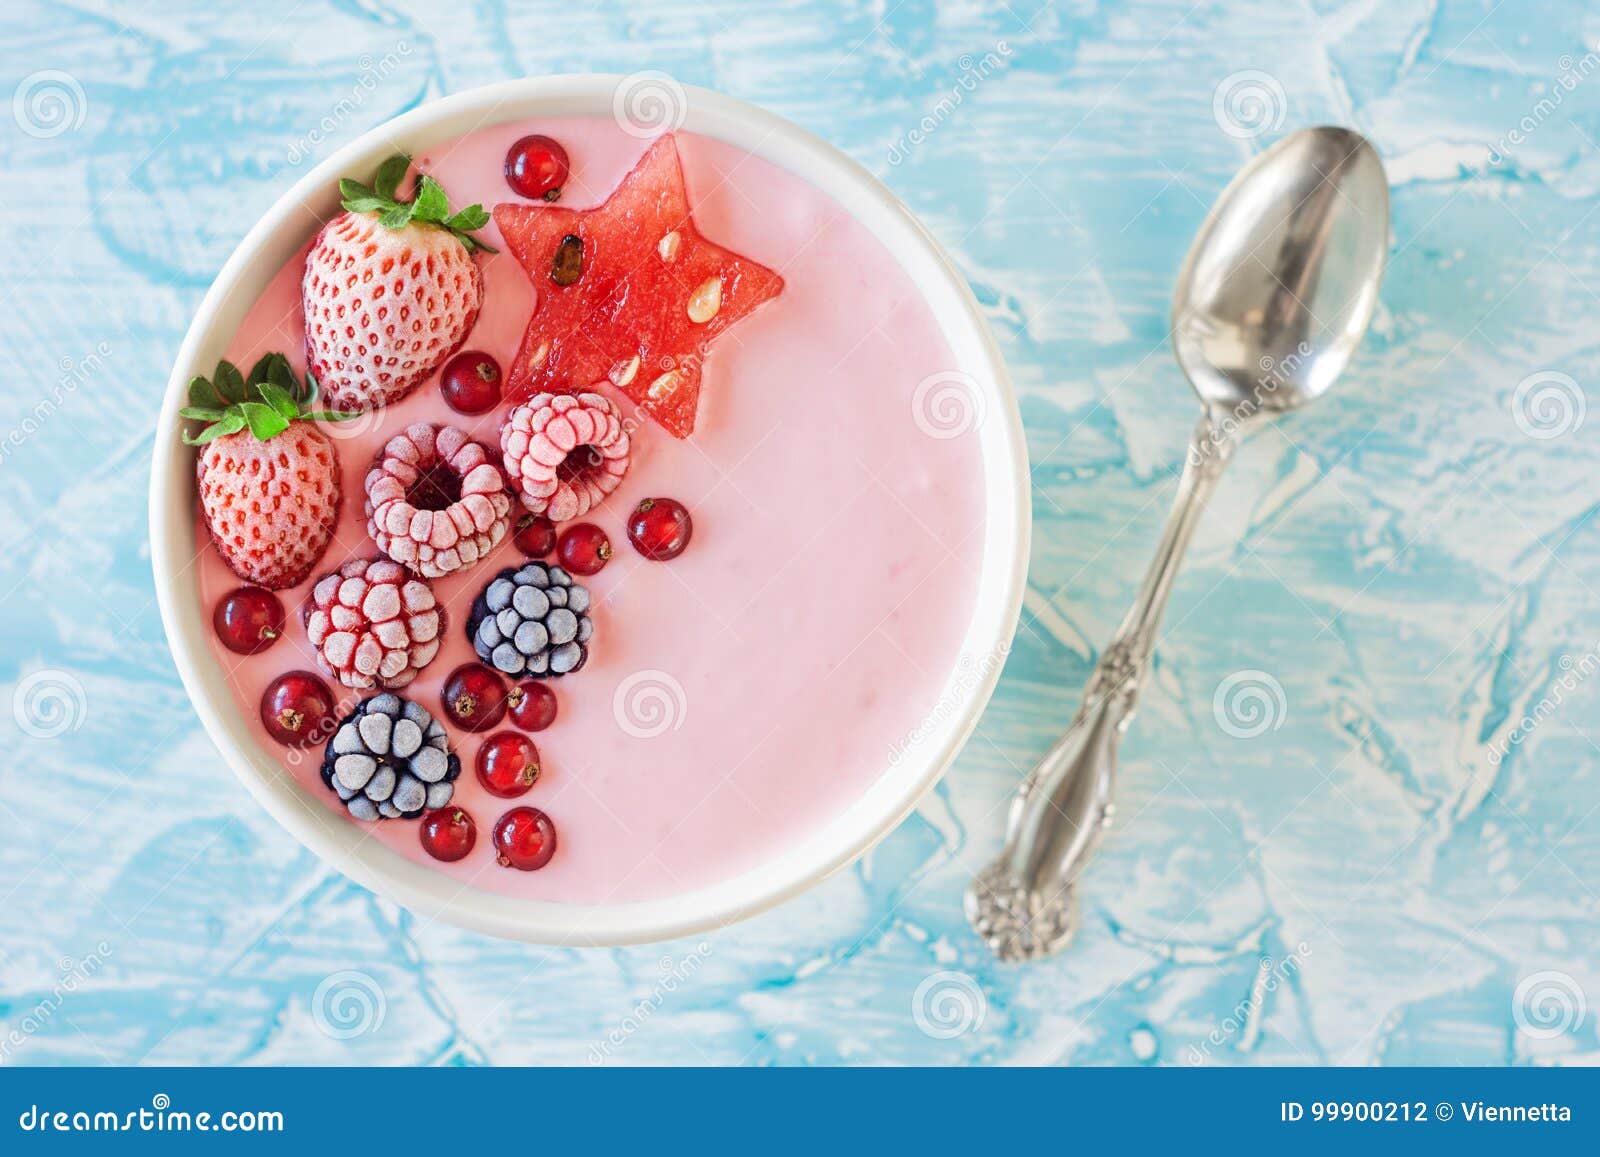 Rosa Berry Yogurt Smoothie Bowl Mit Frucht Stockfoto   Bild von ...